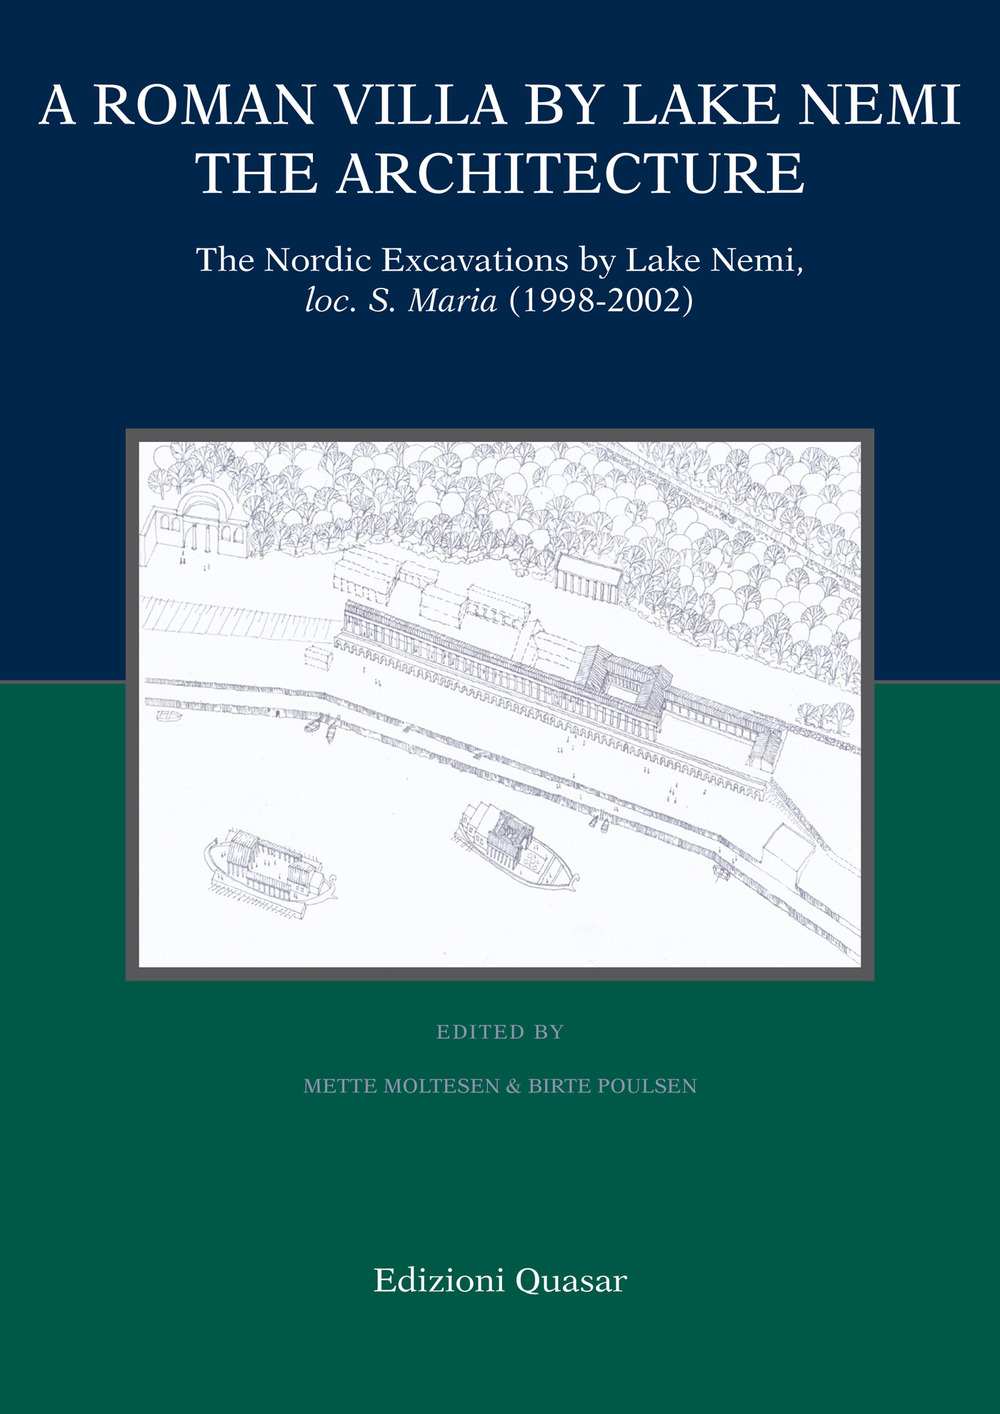 A Roman villa by Lake Nemi. The architecture. The Nordic excavations by Lake Nemi, loc. S. Maria (1998-2002)